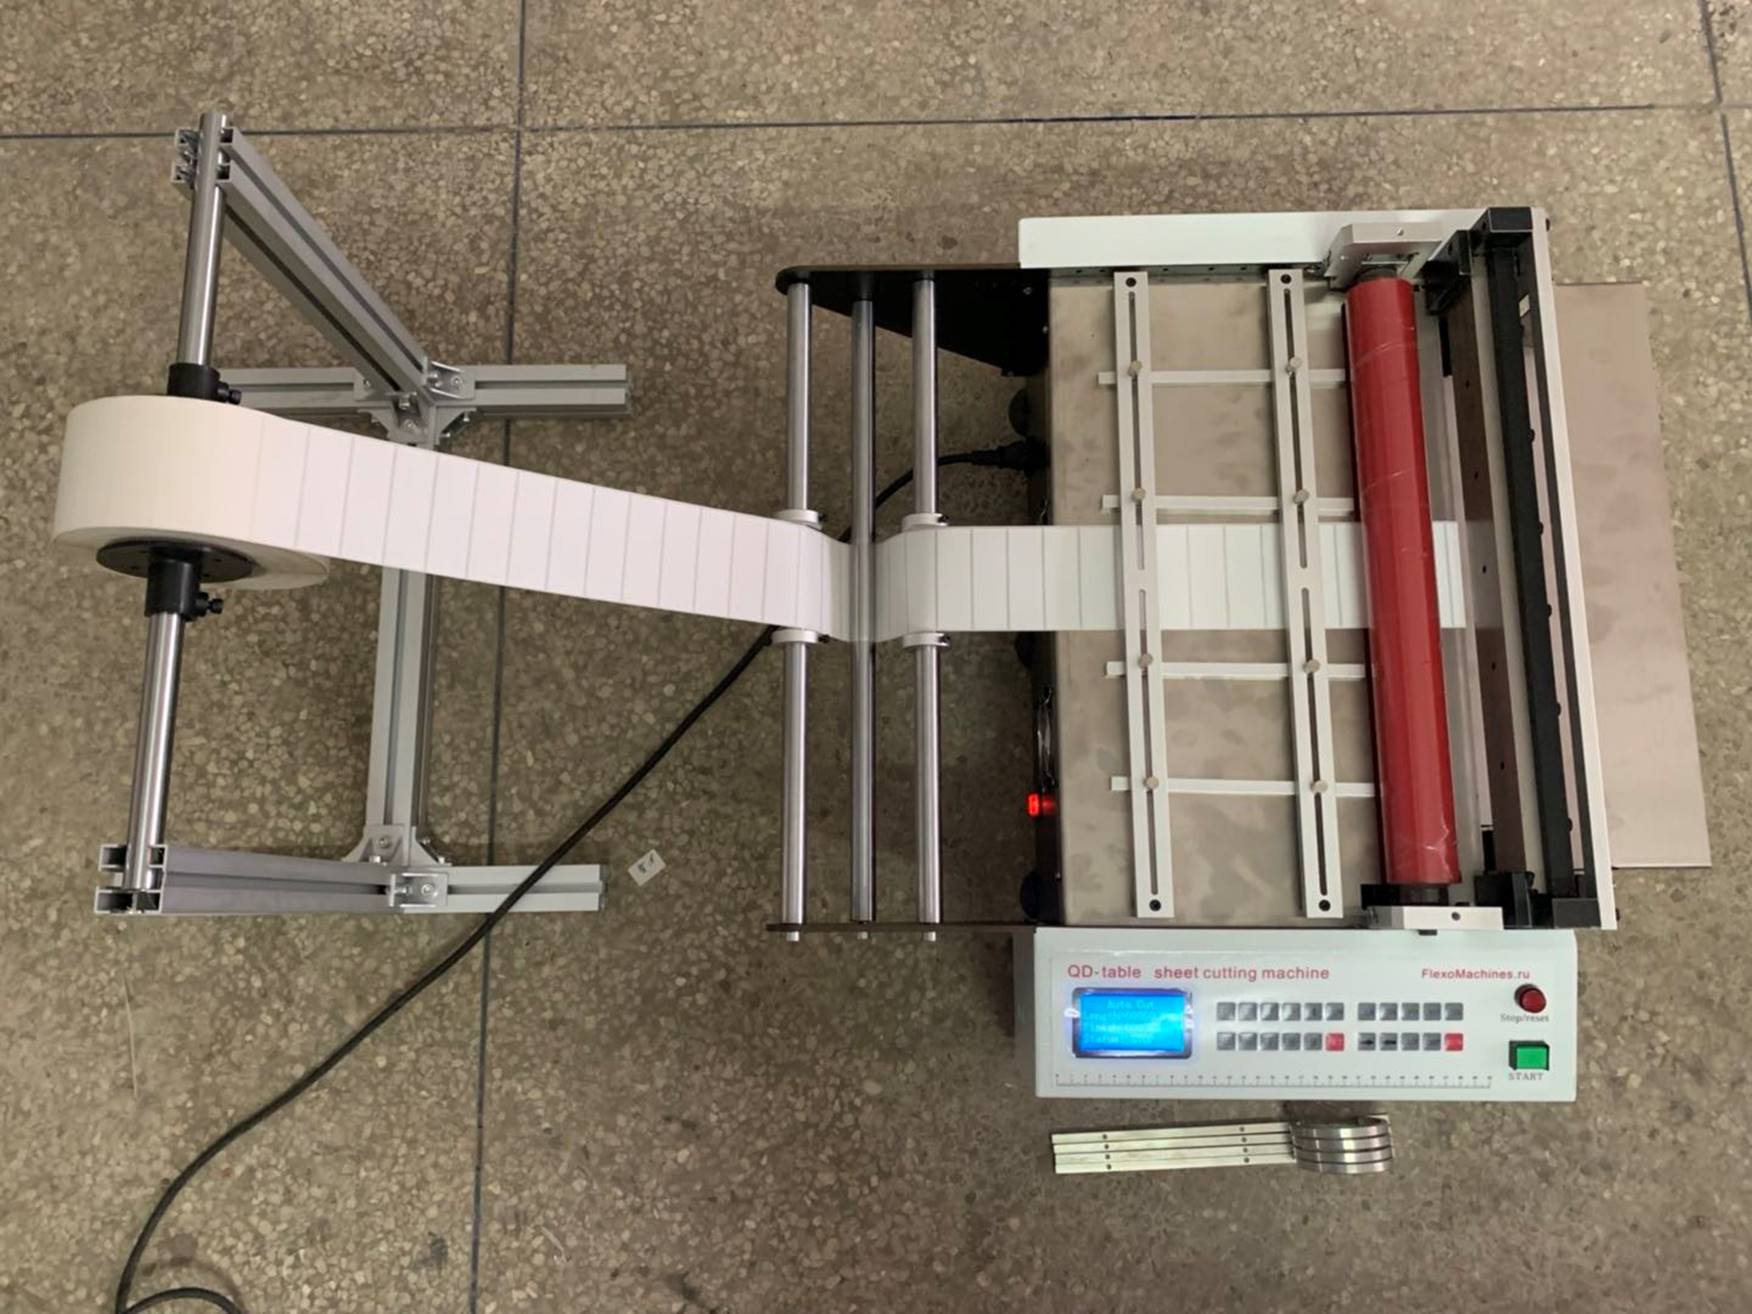 Листорезальная машина QD-400-table- подробные фотографии– 4-я машина из серии - листорезки - флаторезки в комплекте с отдельной стойкой размотки роля. Фотография 2.